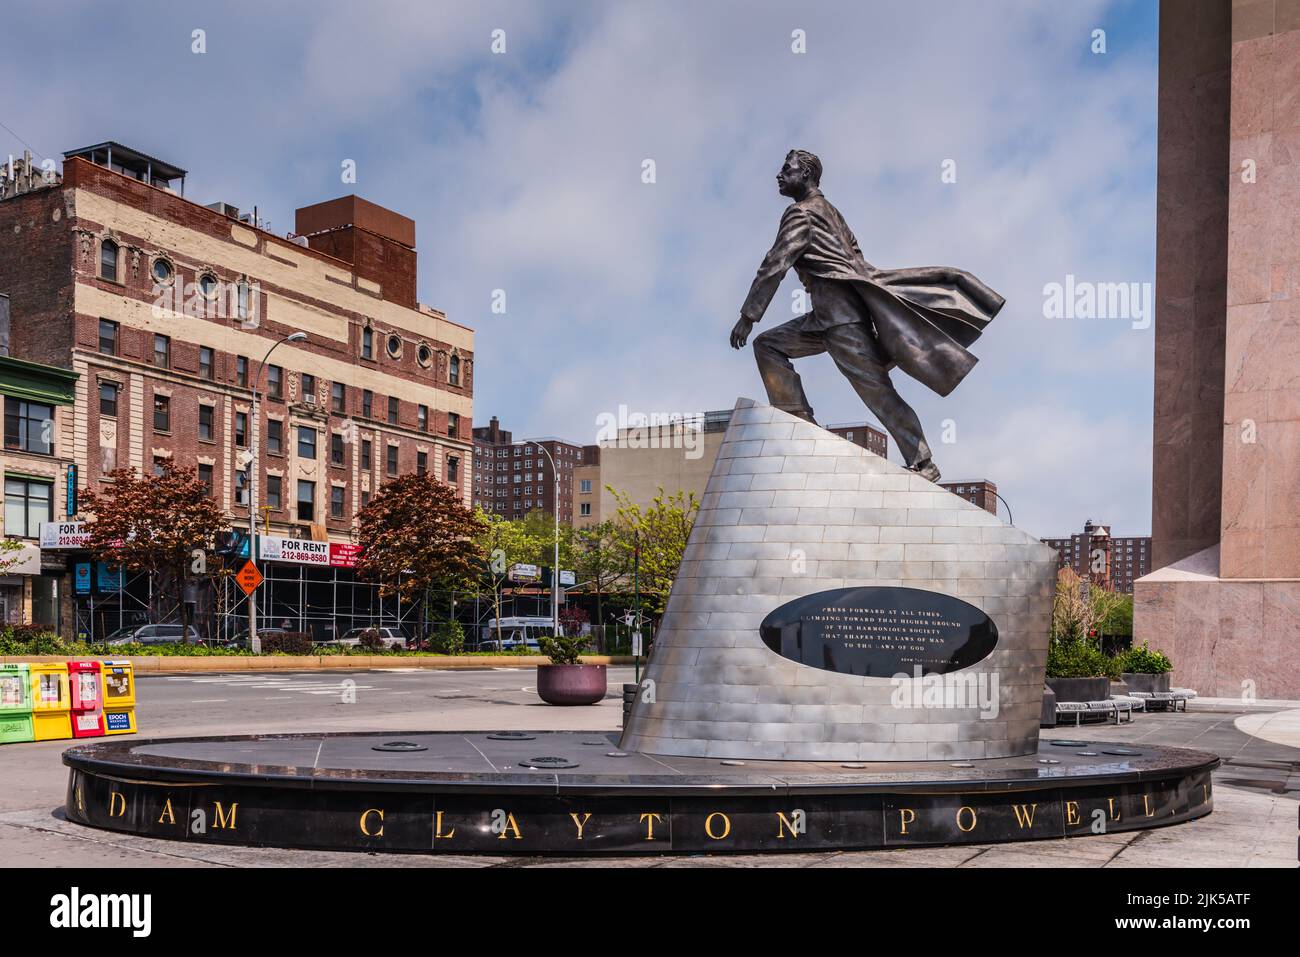 Nueva York, NY/USA - 05-07-2016: Imponente estatua de Adam Clayton Powell. Foto de stock